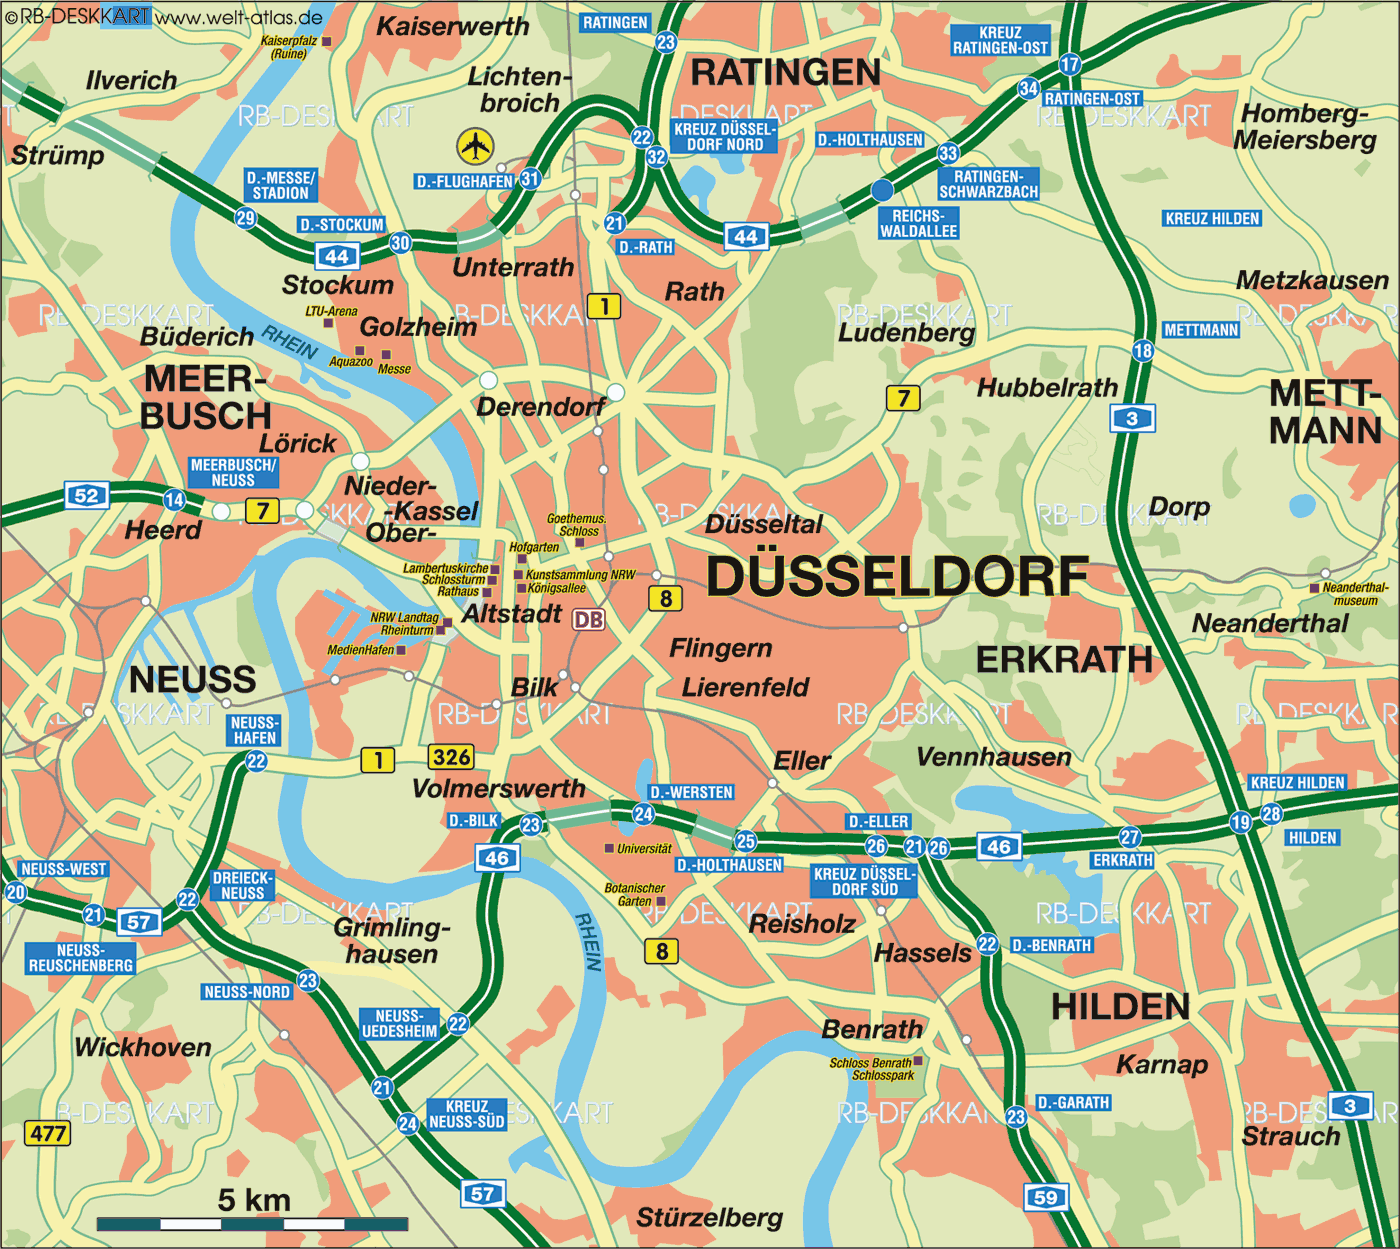 karte düsseldorf umgebung Karte Von Dusseldorf Stadt In Deutschland Welt Atlas De karte düsseldorf umgebung